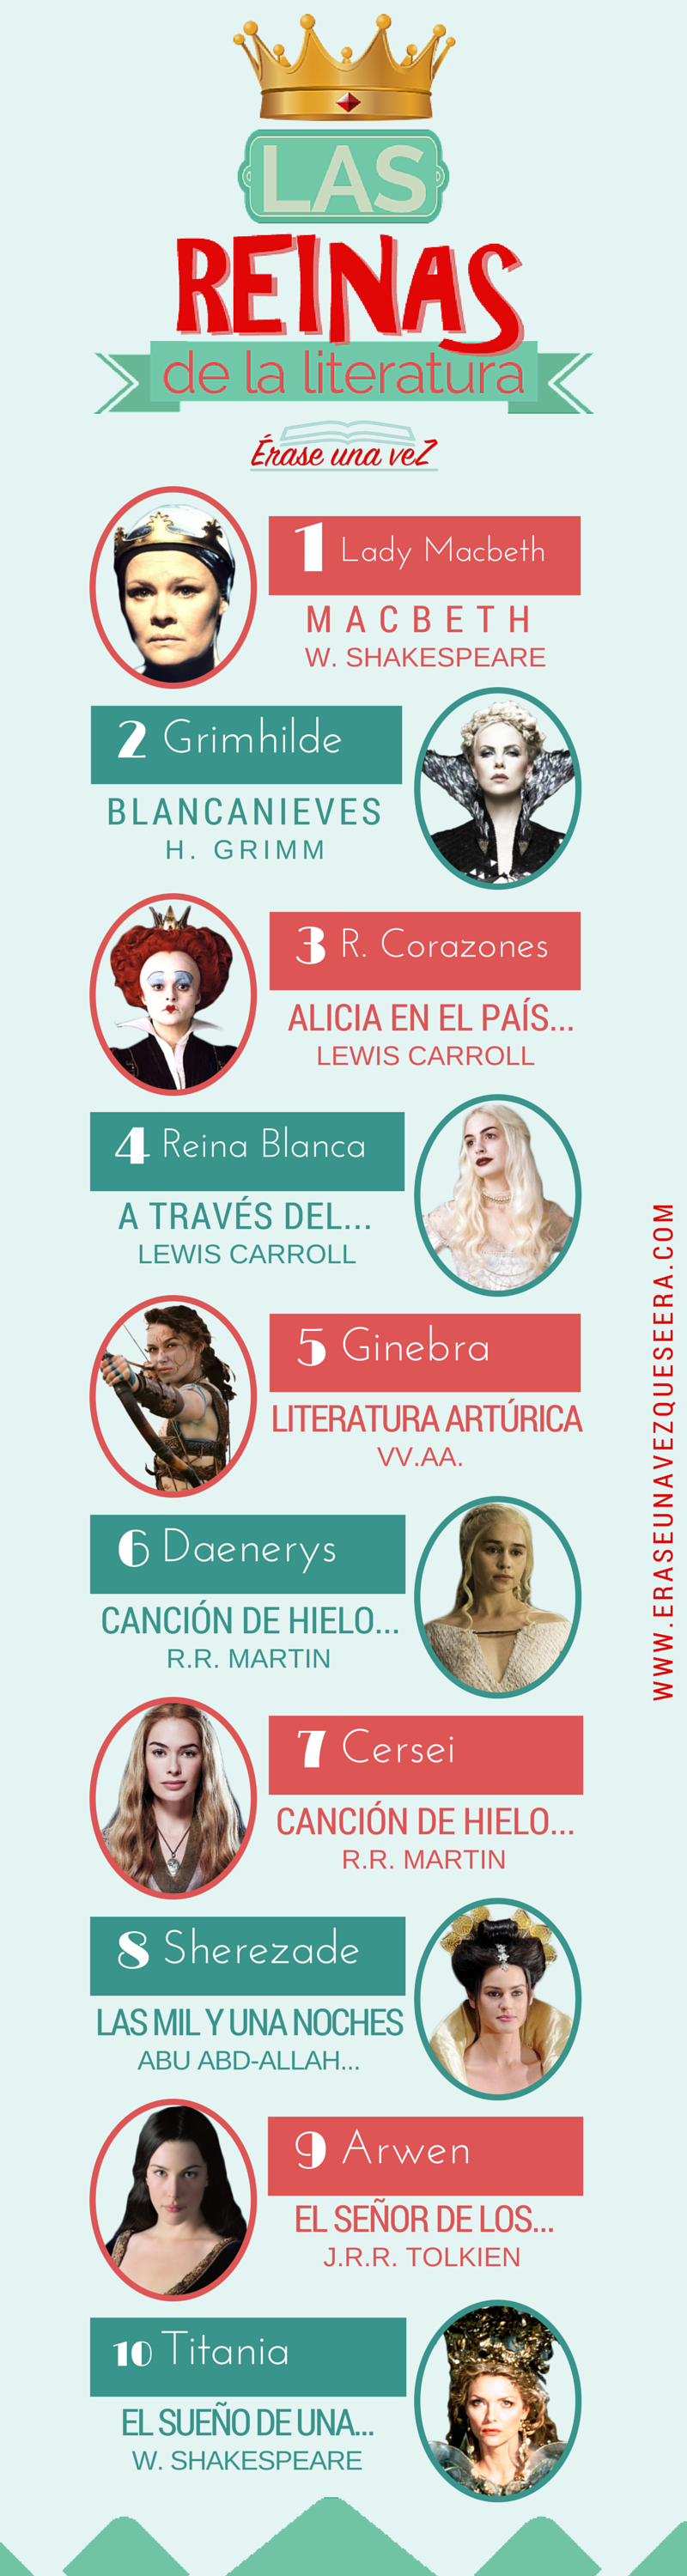 Infografía: las reinas de la literatura